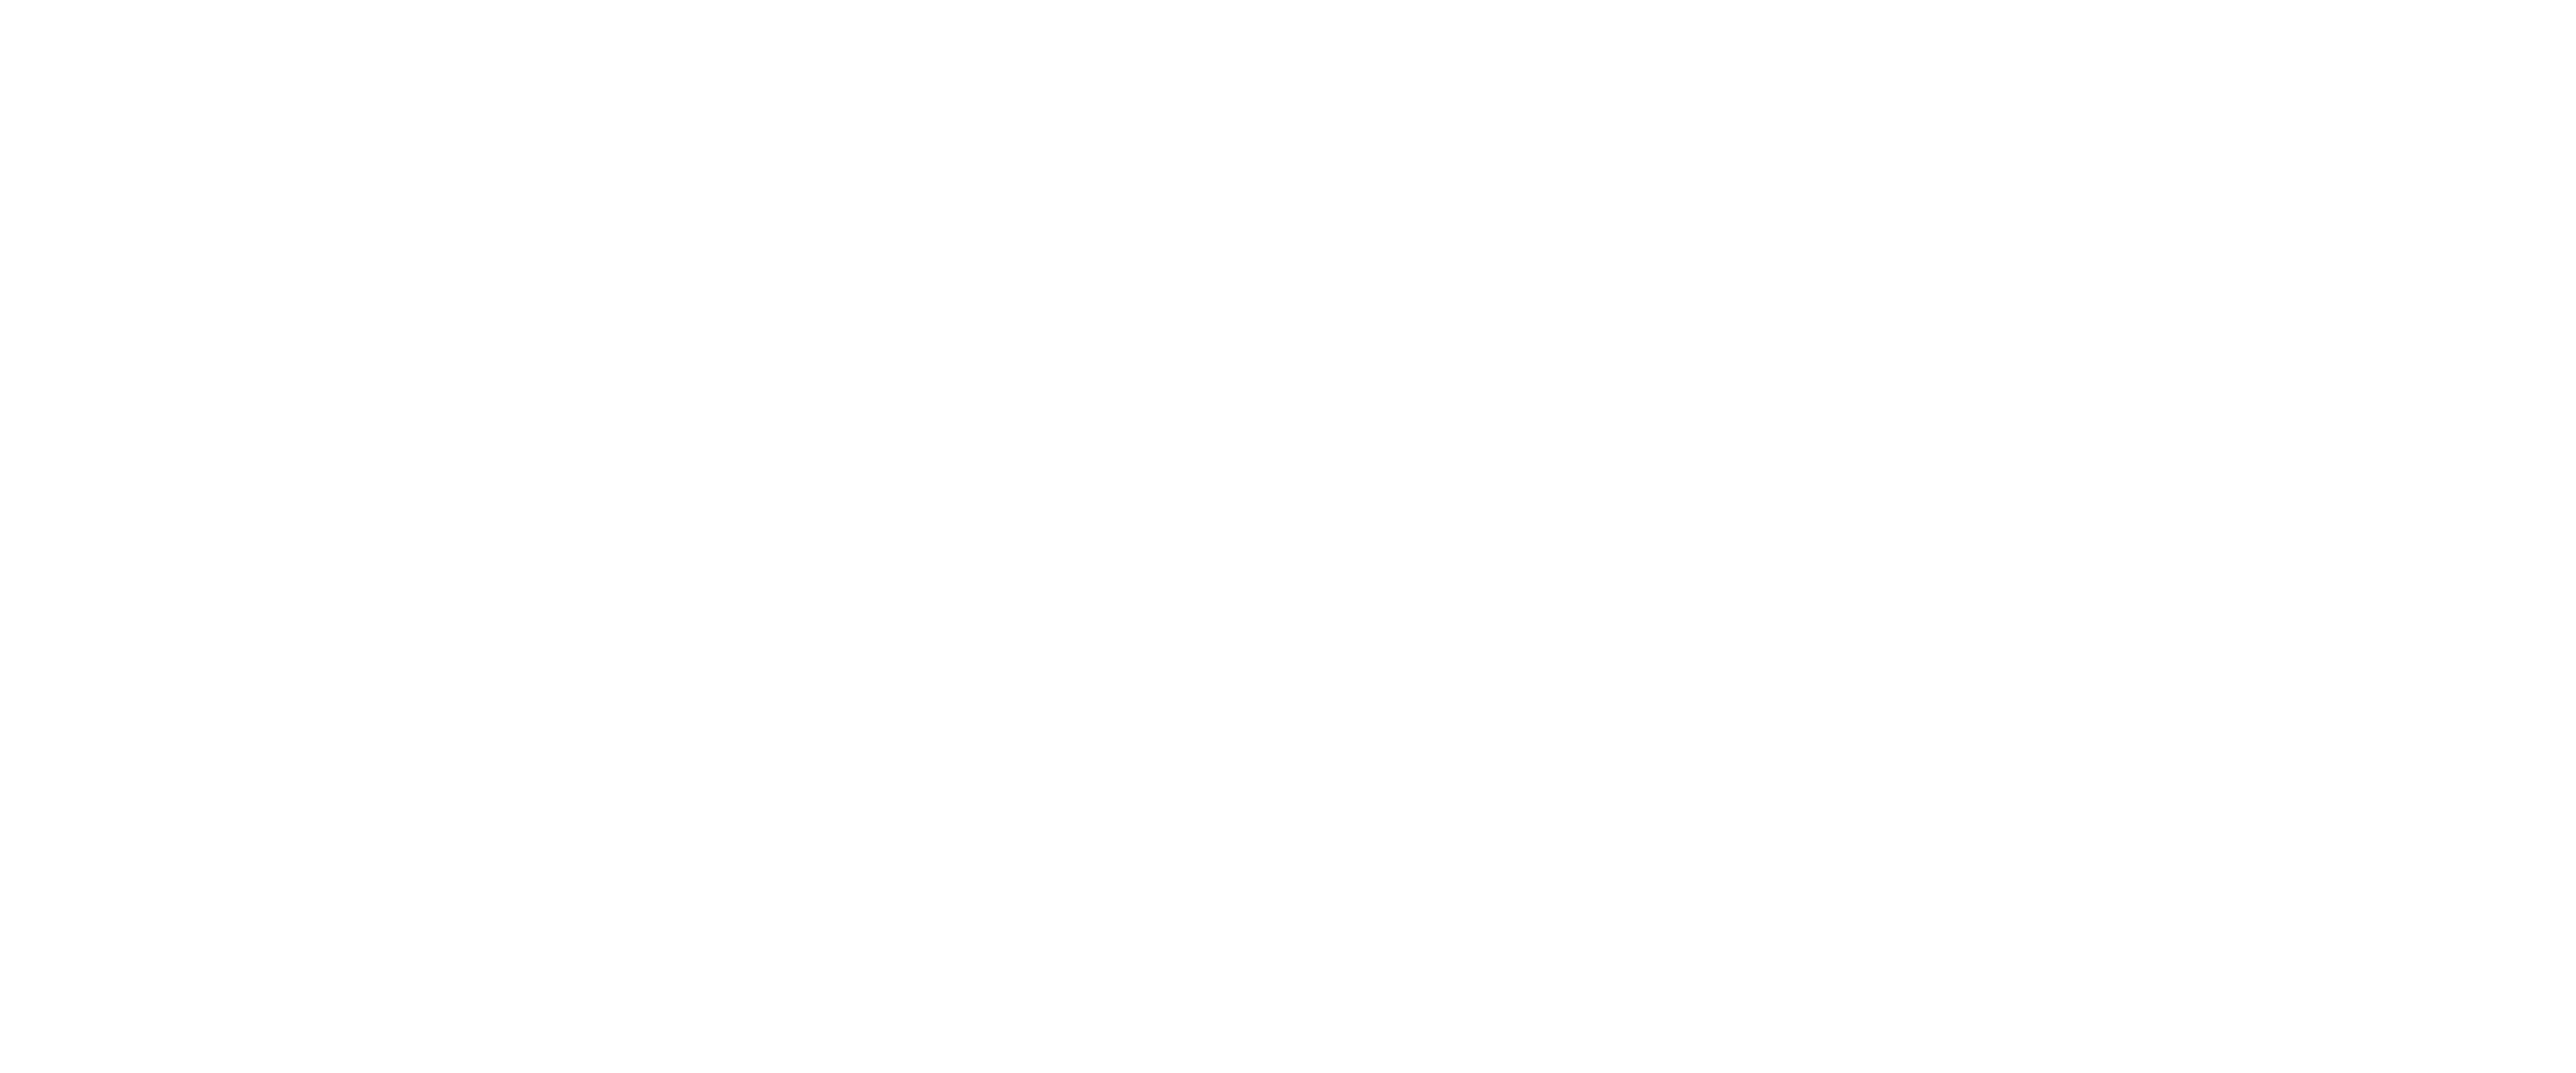 St. Cecelia